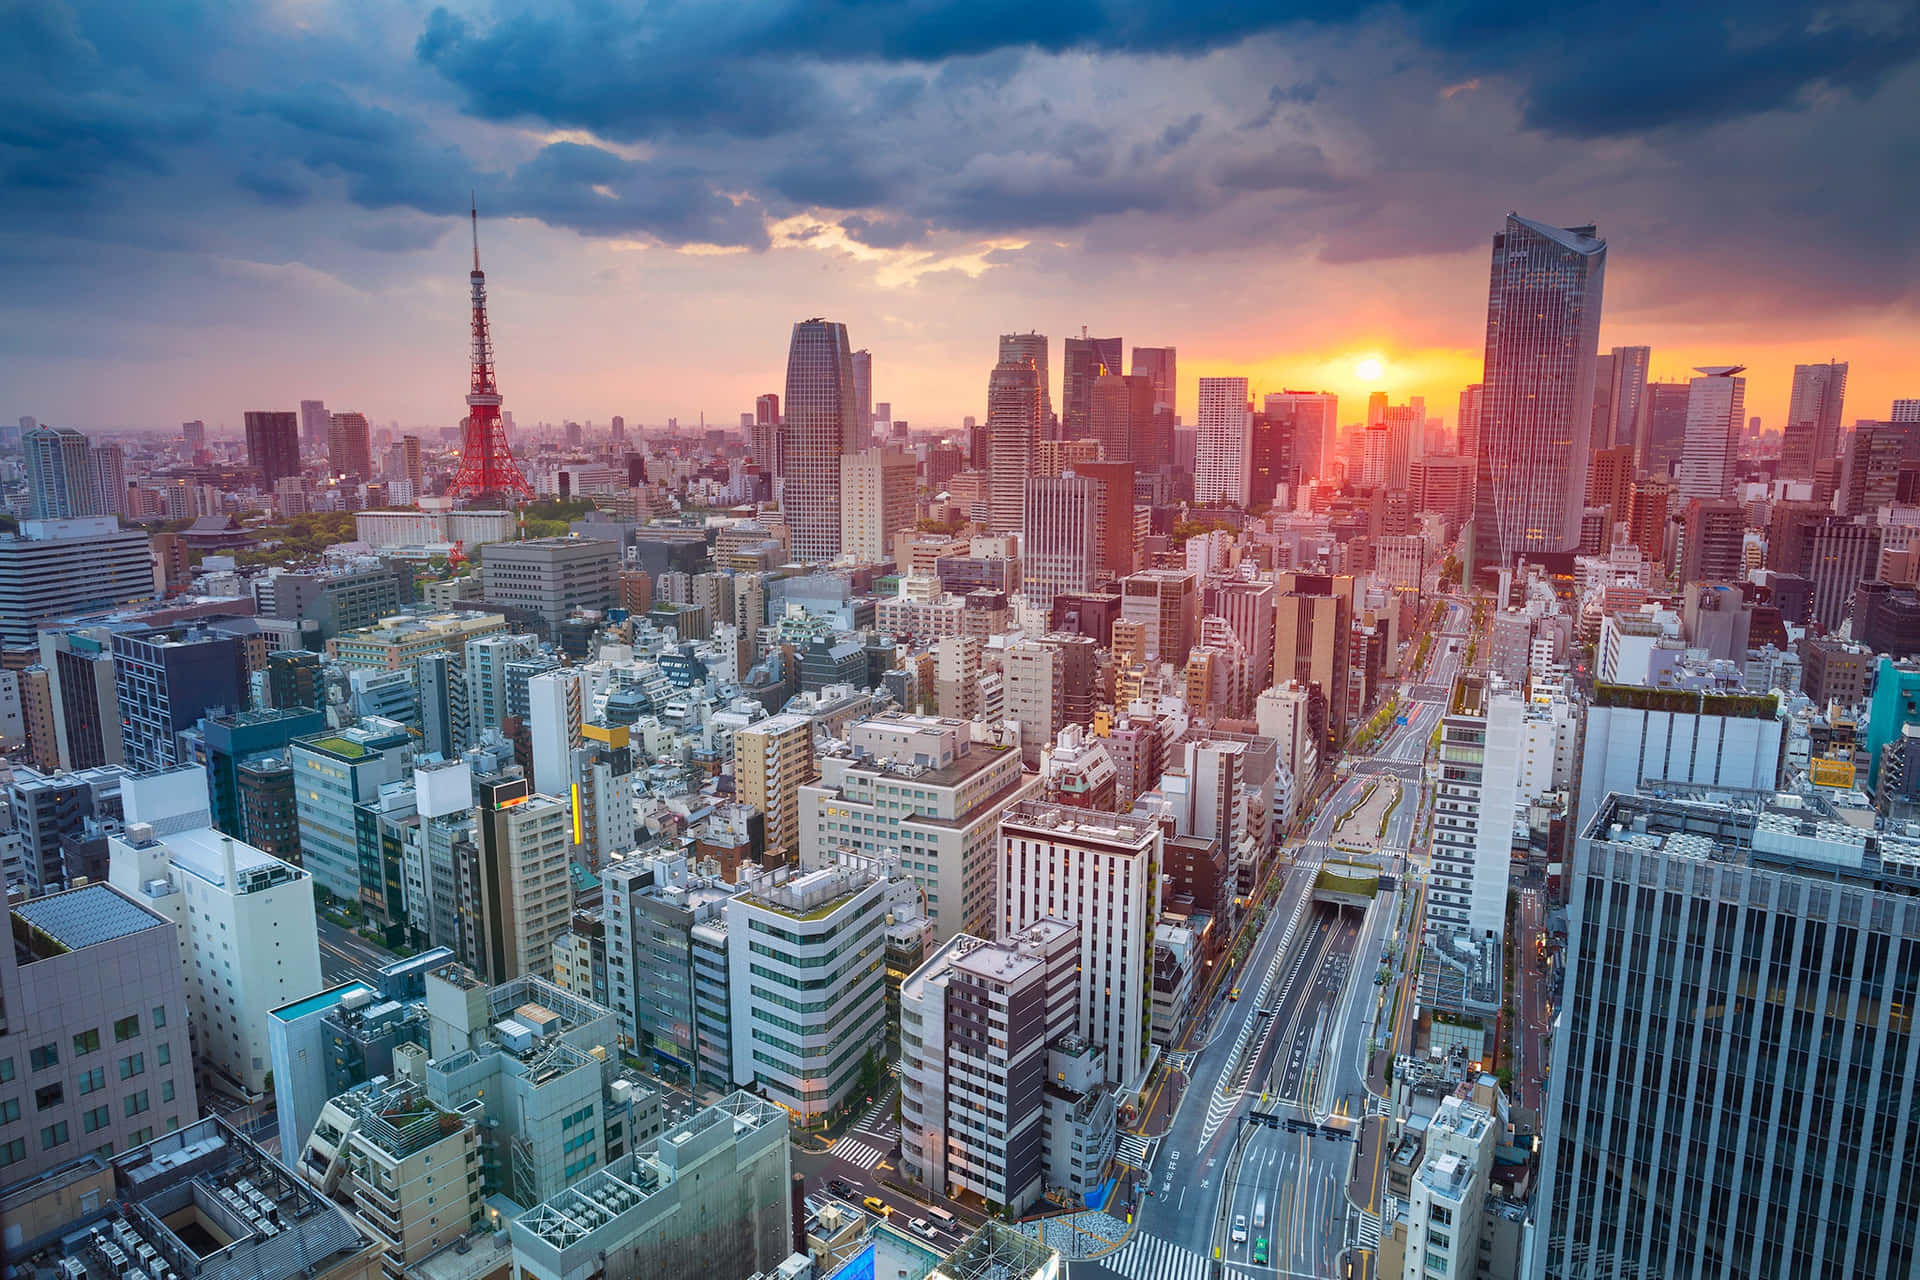 Illuminated Skyline in Tokyo at Dusk